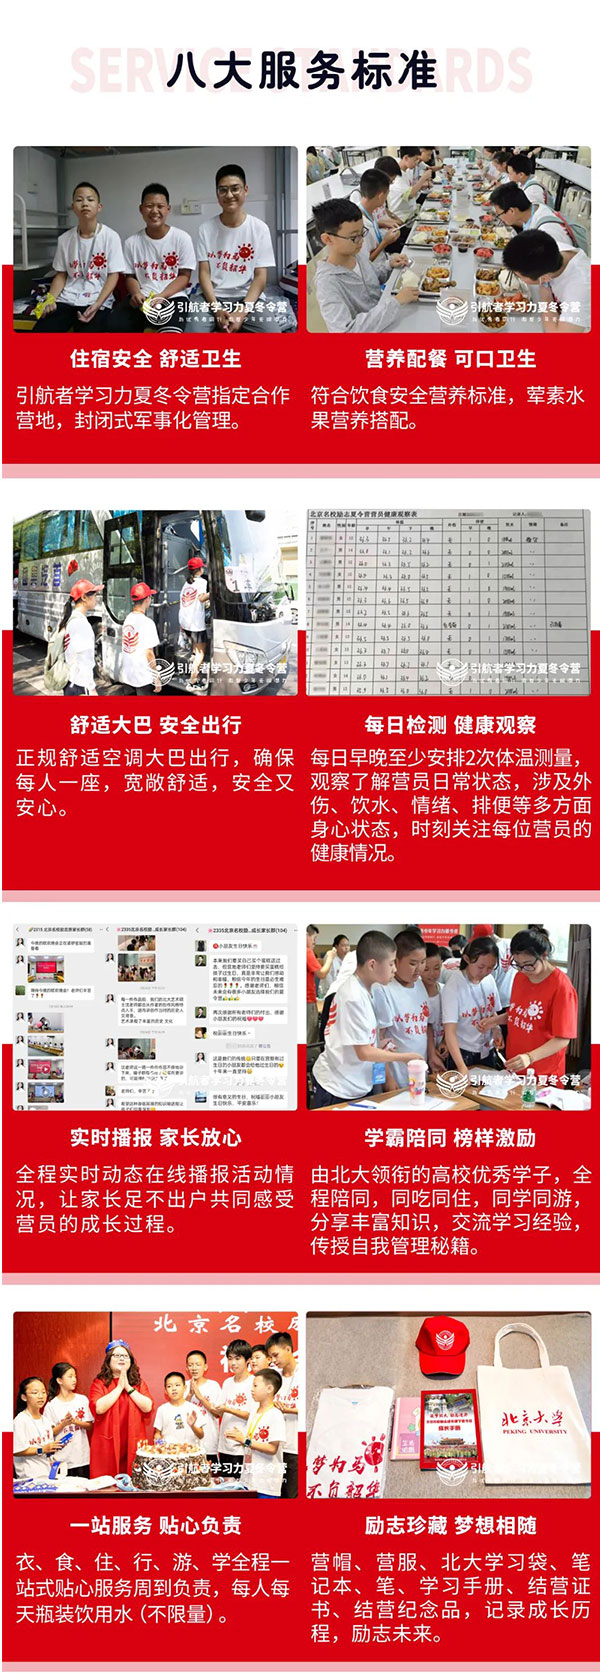 北京青少年学习动力激发研学夏令营